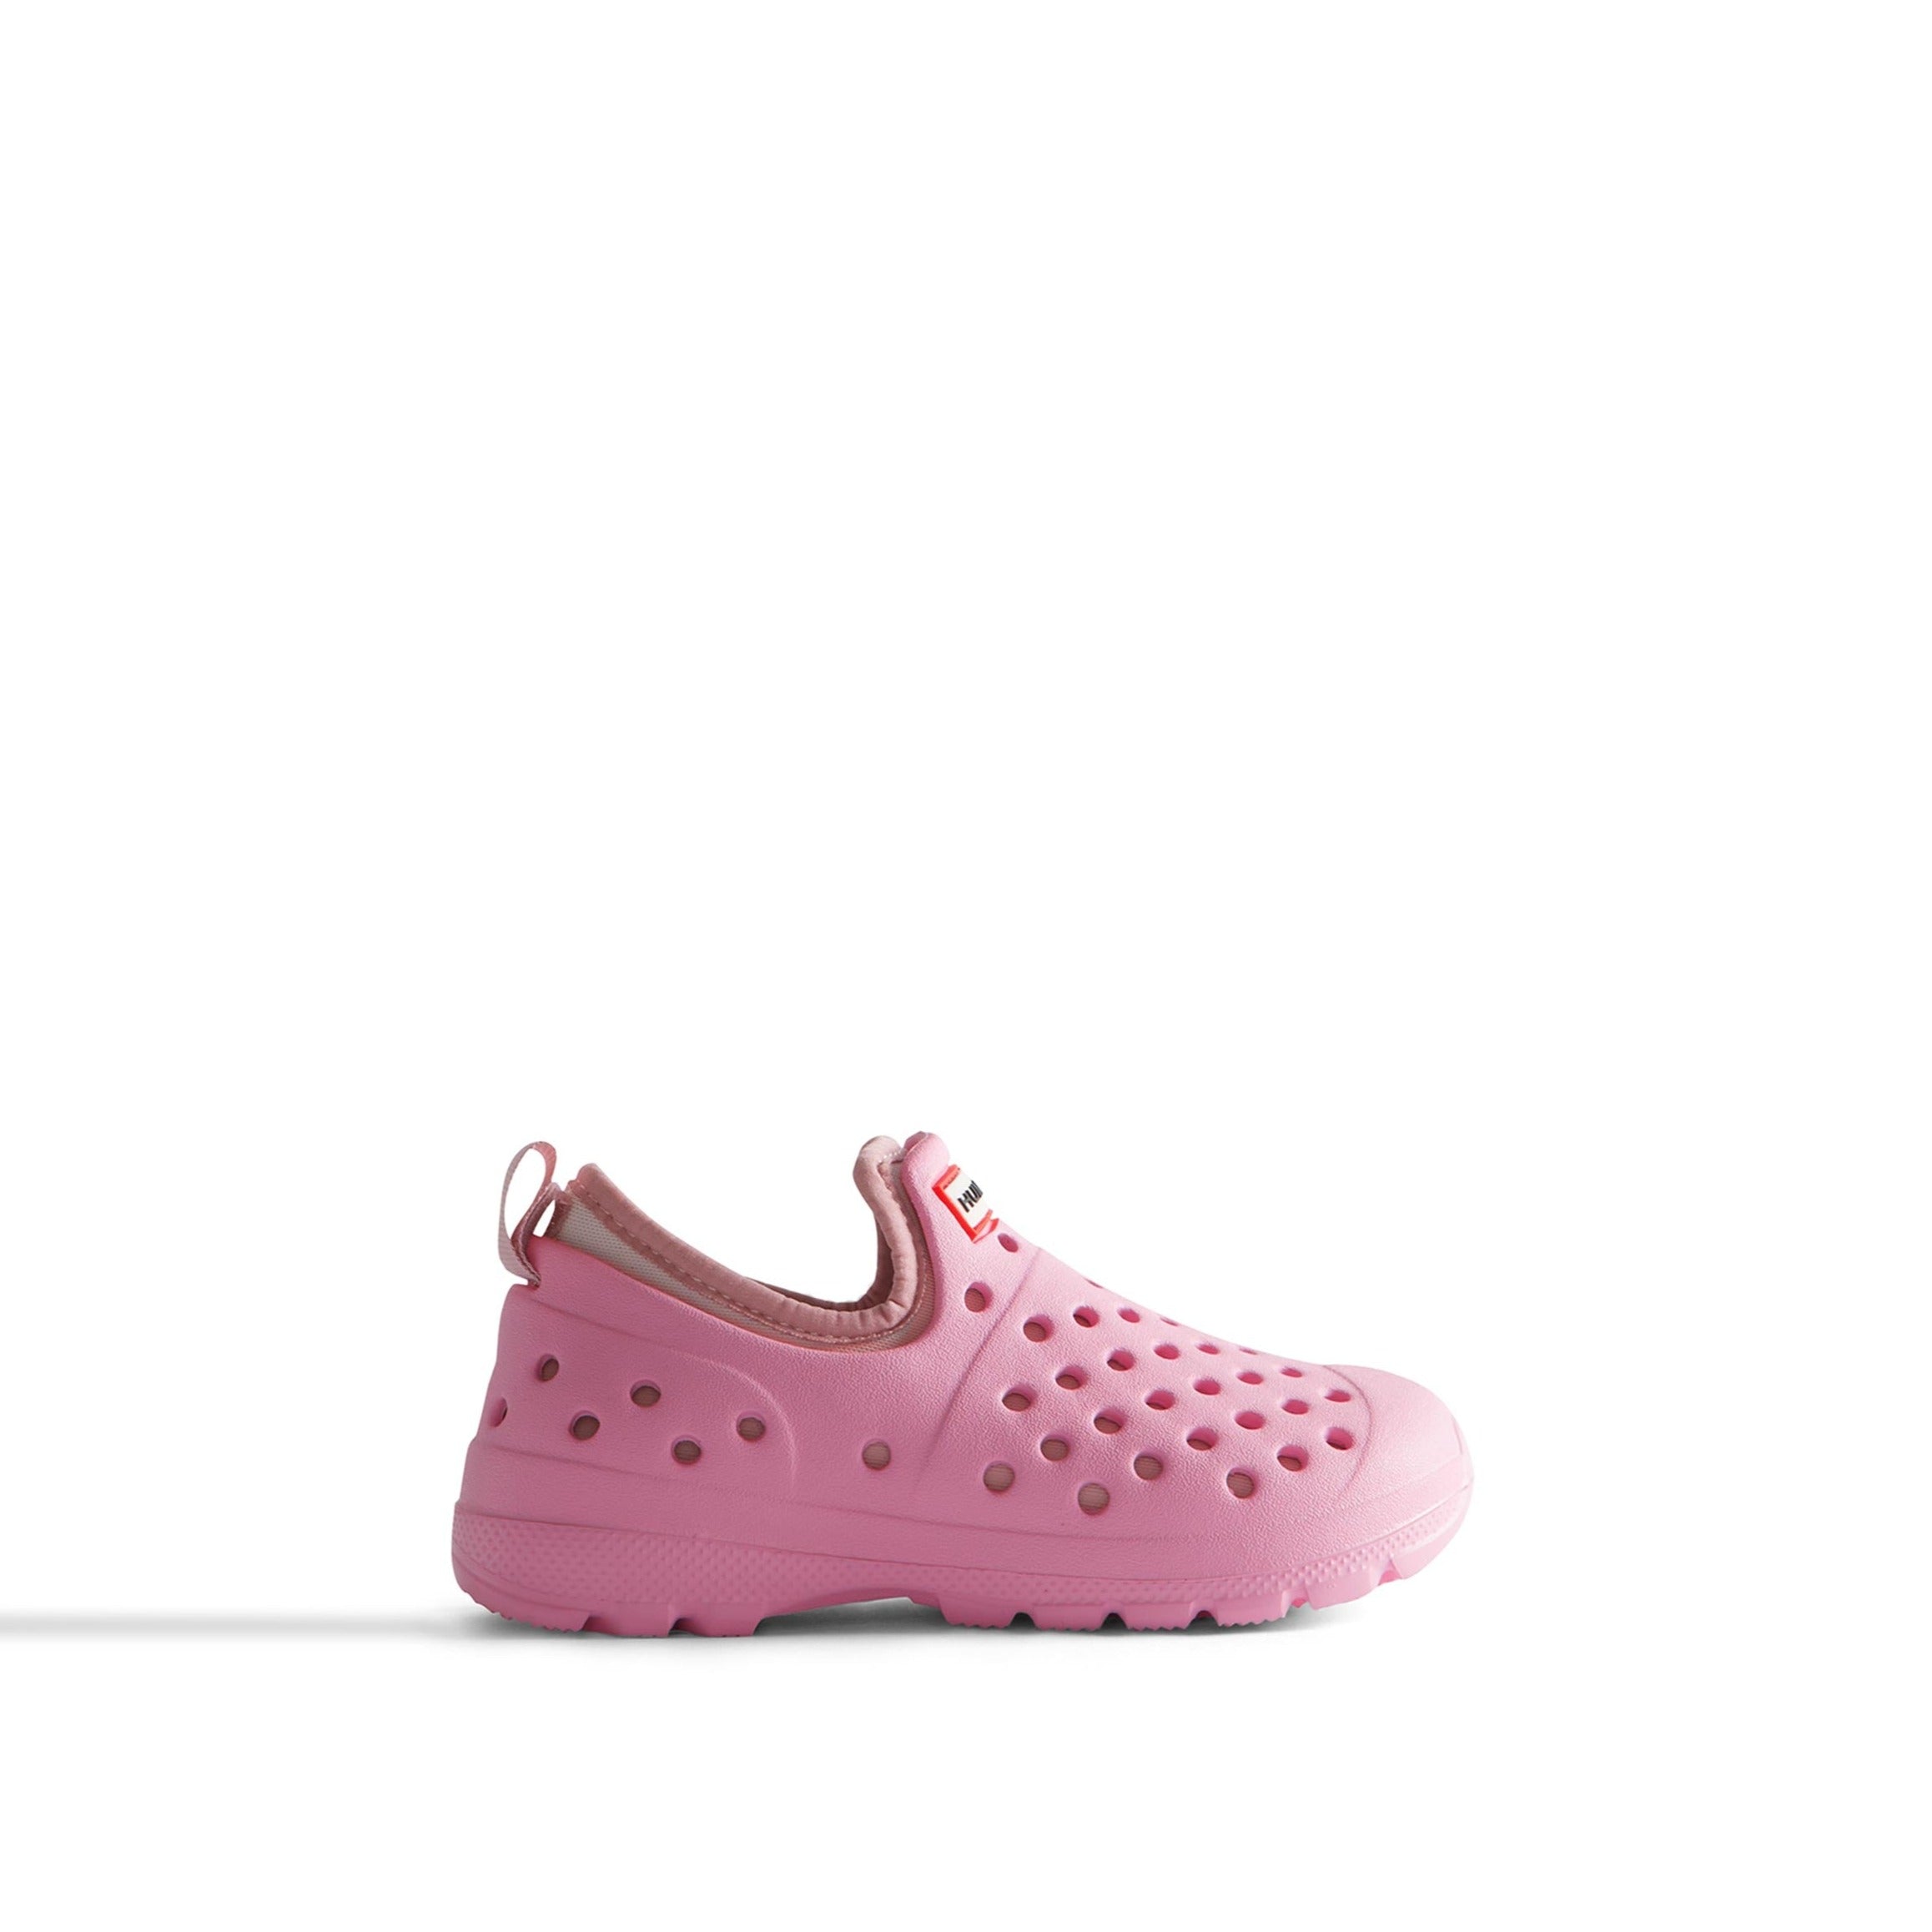 Sample UGG Little Kids Water Shoe Sandal Pink Fizz/Azalea Pink 9 